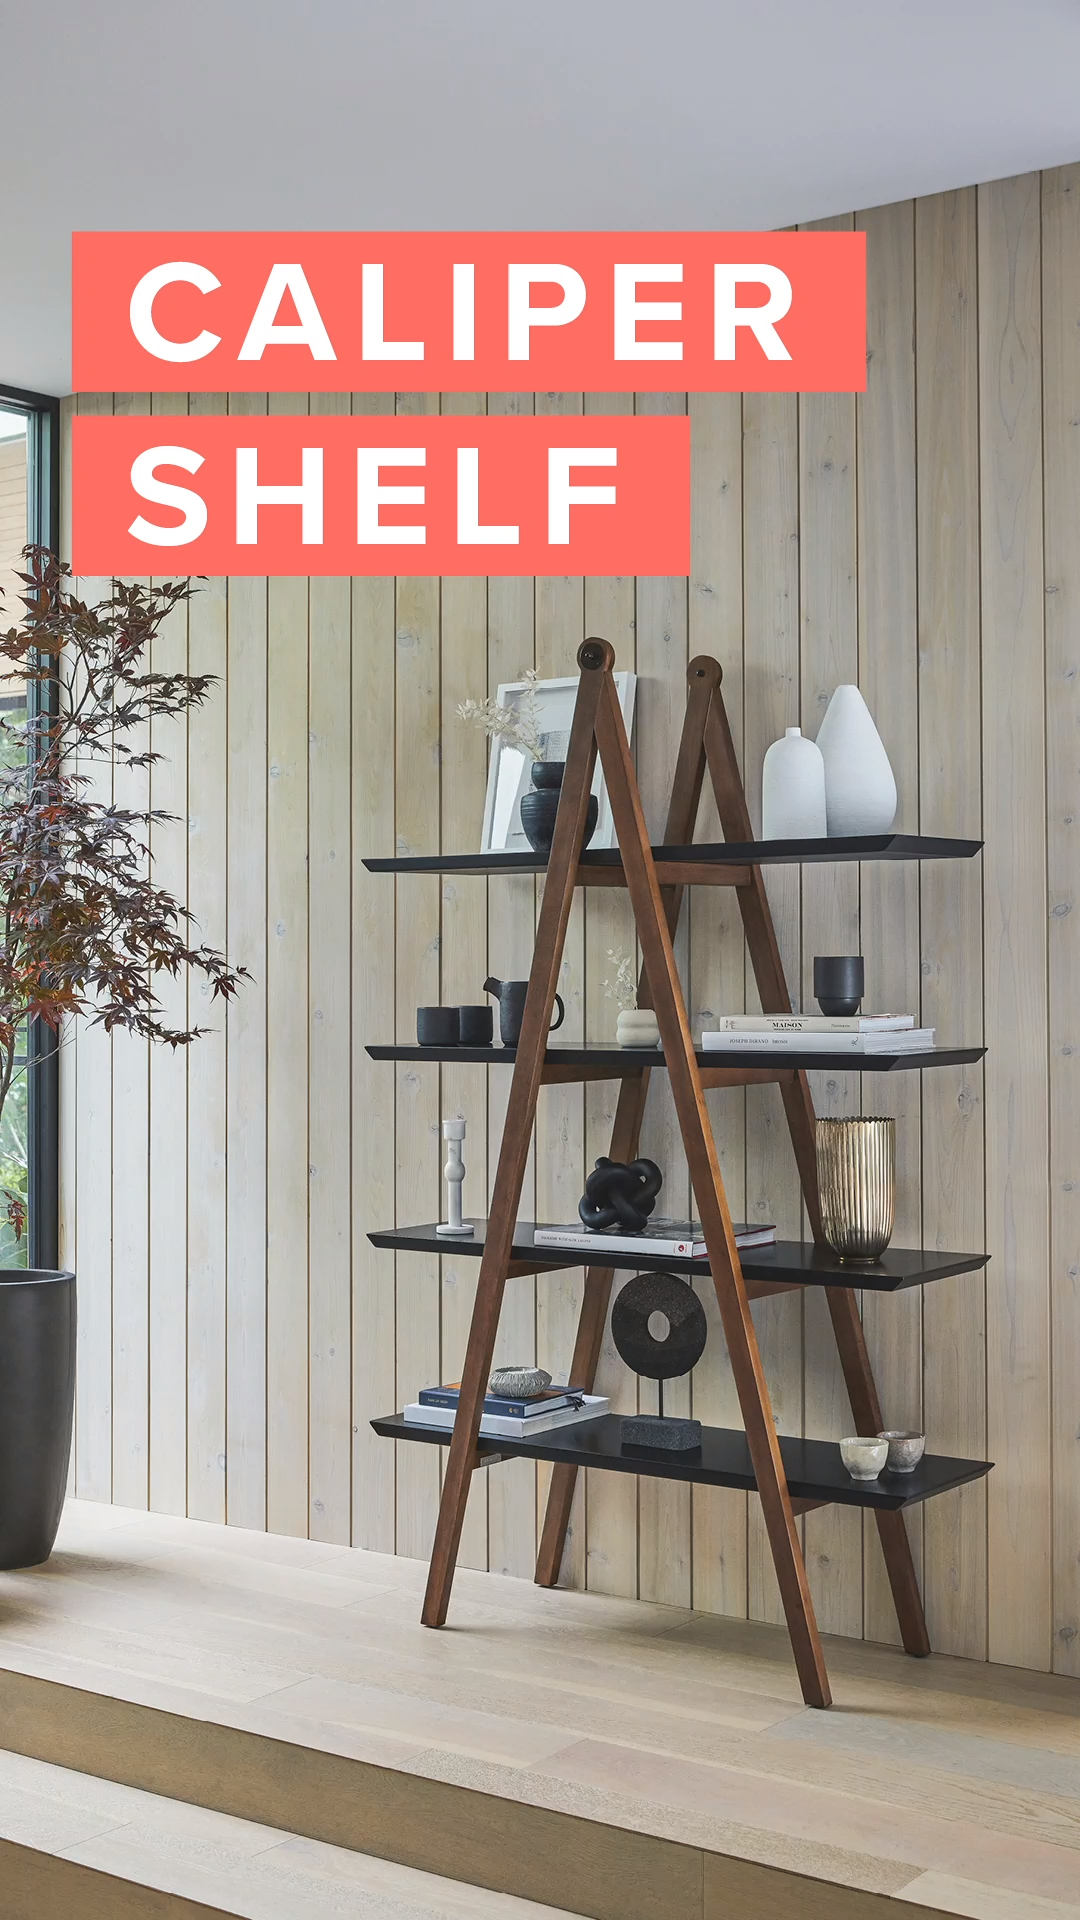 19 diy Kitchen shelf ideas